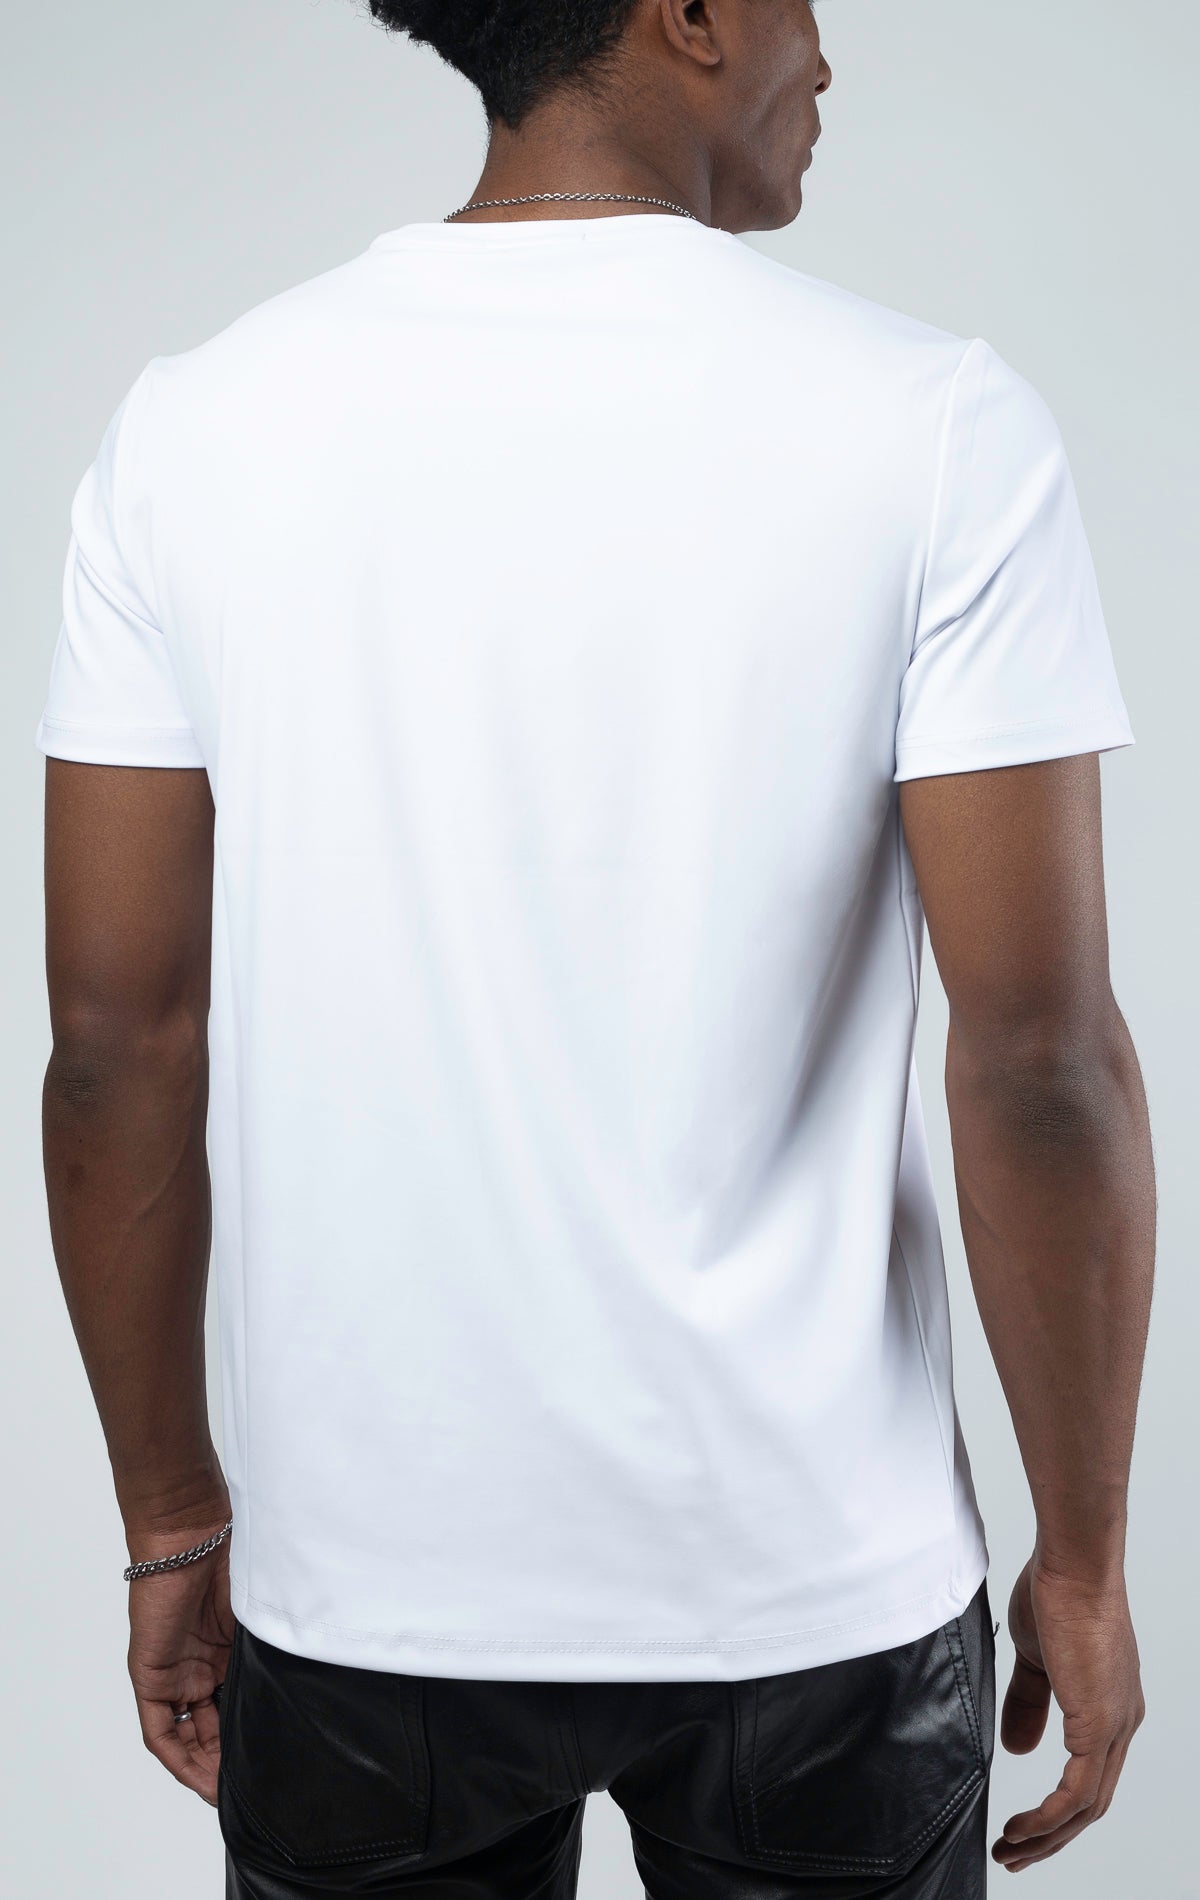 White luxury t-shirt